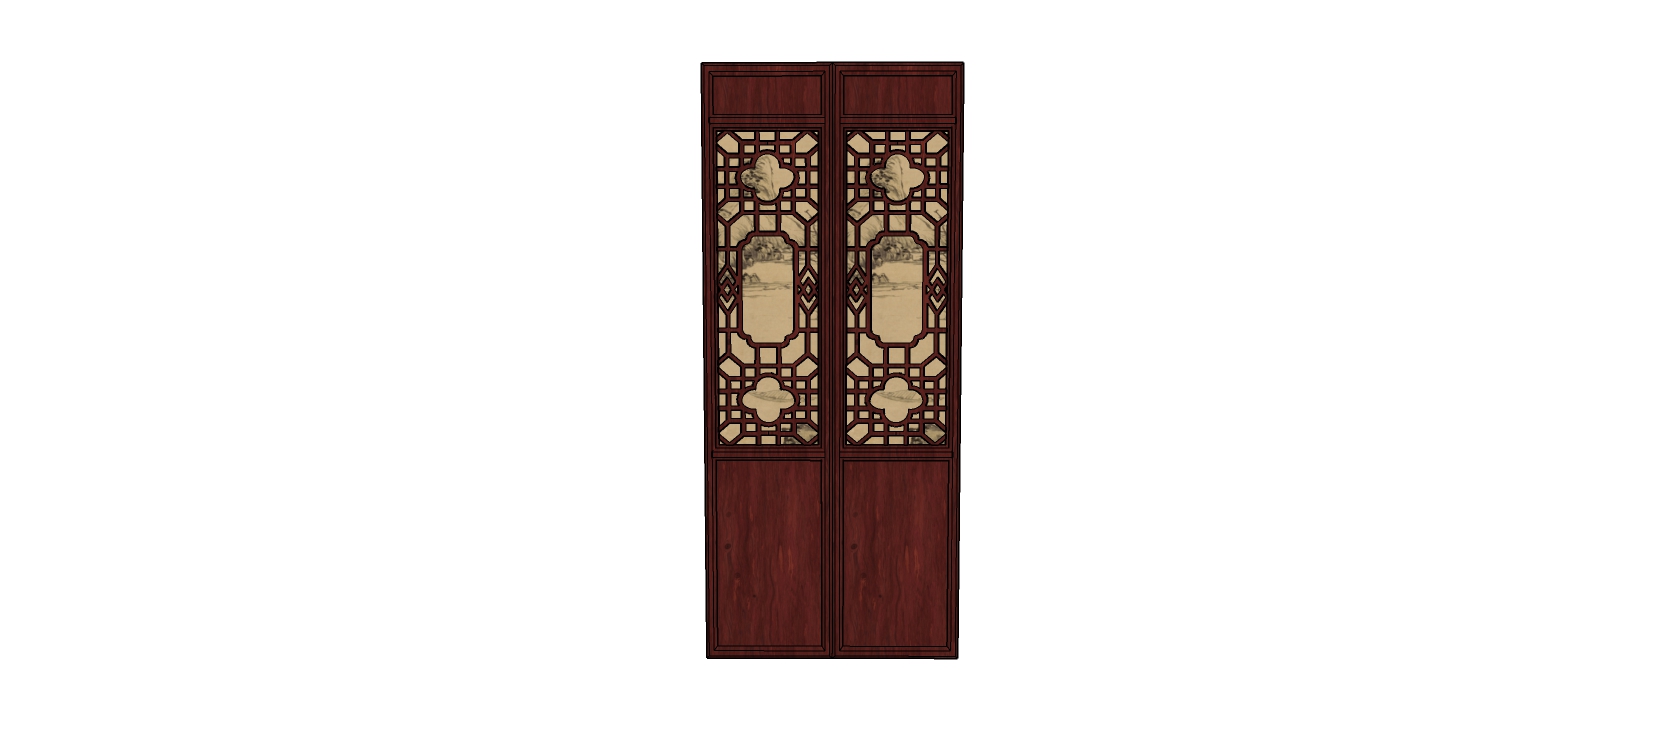 中式复古门窗    木质门窗